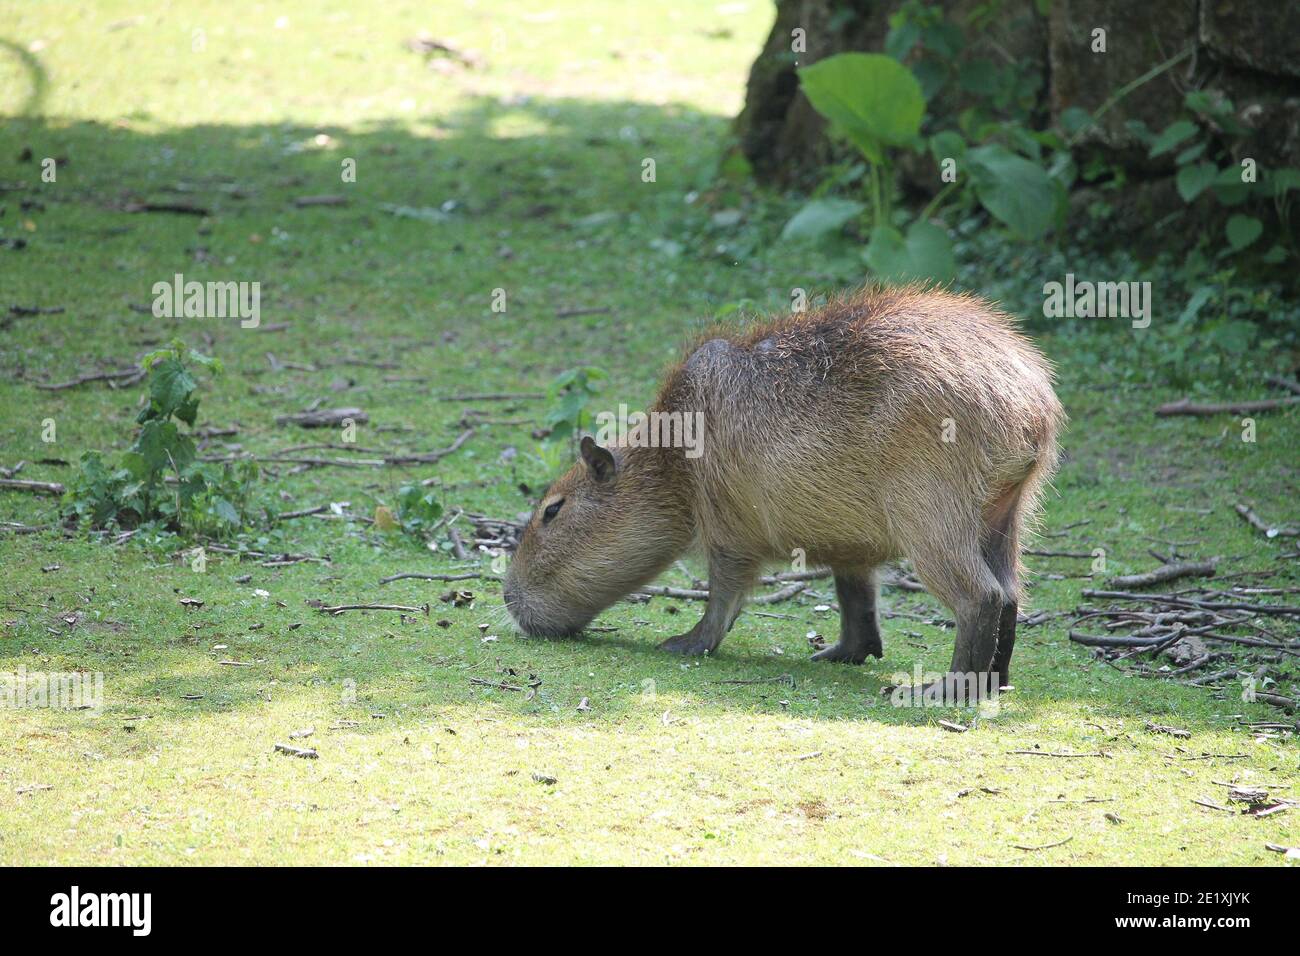 Die Capybara ist ein riesiges Nagetier, das in Südamerika beheimatet ist. Es ist das größte lebende Nagetier der Welt. Auch capivara genannt (in Brasilien) Stockfoto